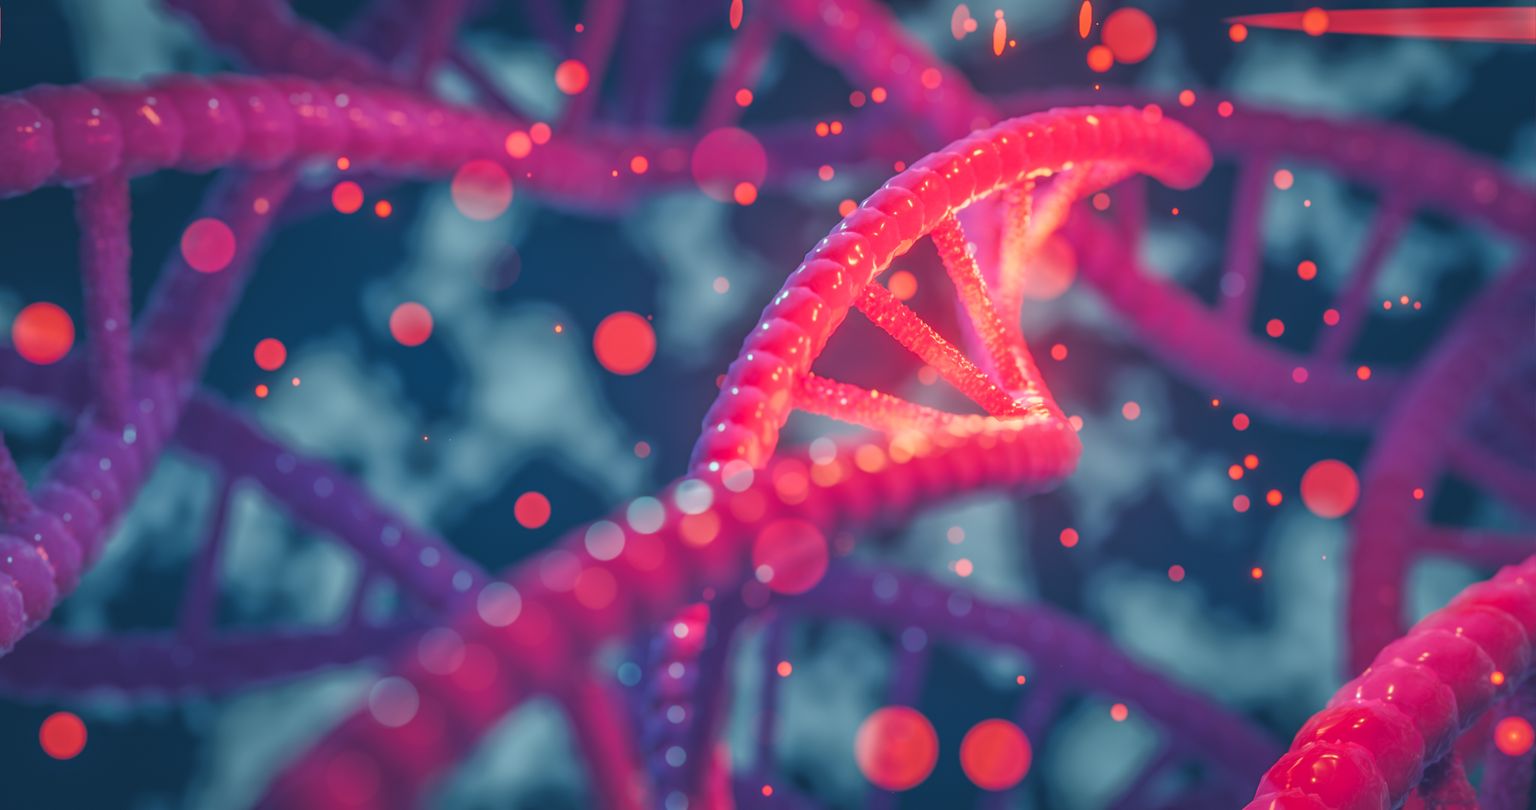 DNA hélice genes coloridos seqüência de DNA cromossomos, estrutura de DNA com brilho. Conceito de ciência, ilustração de fundo 3d